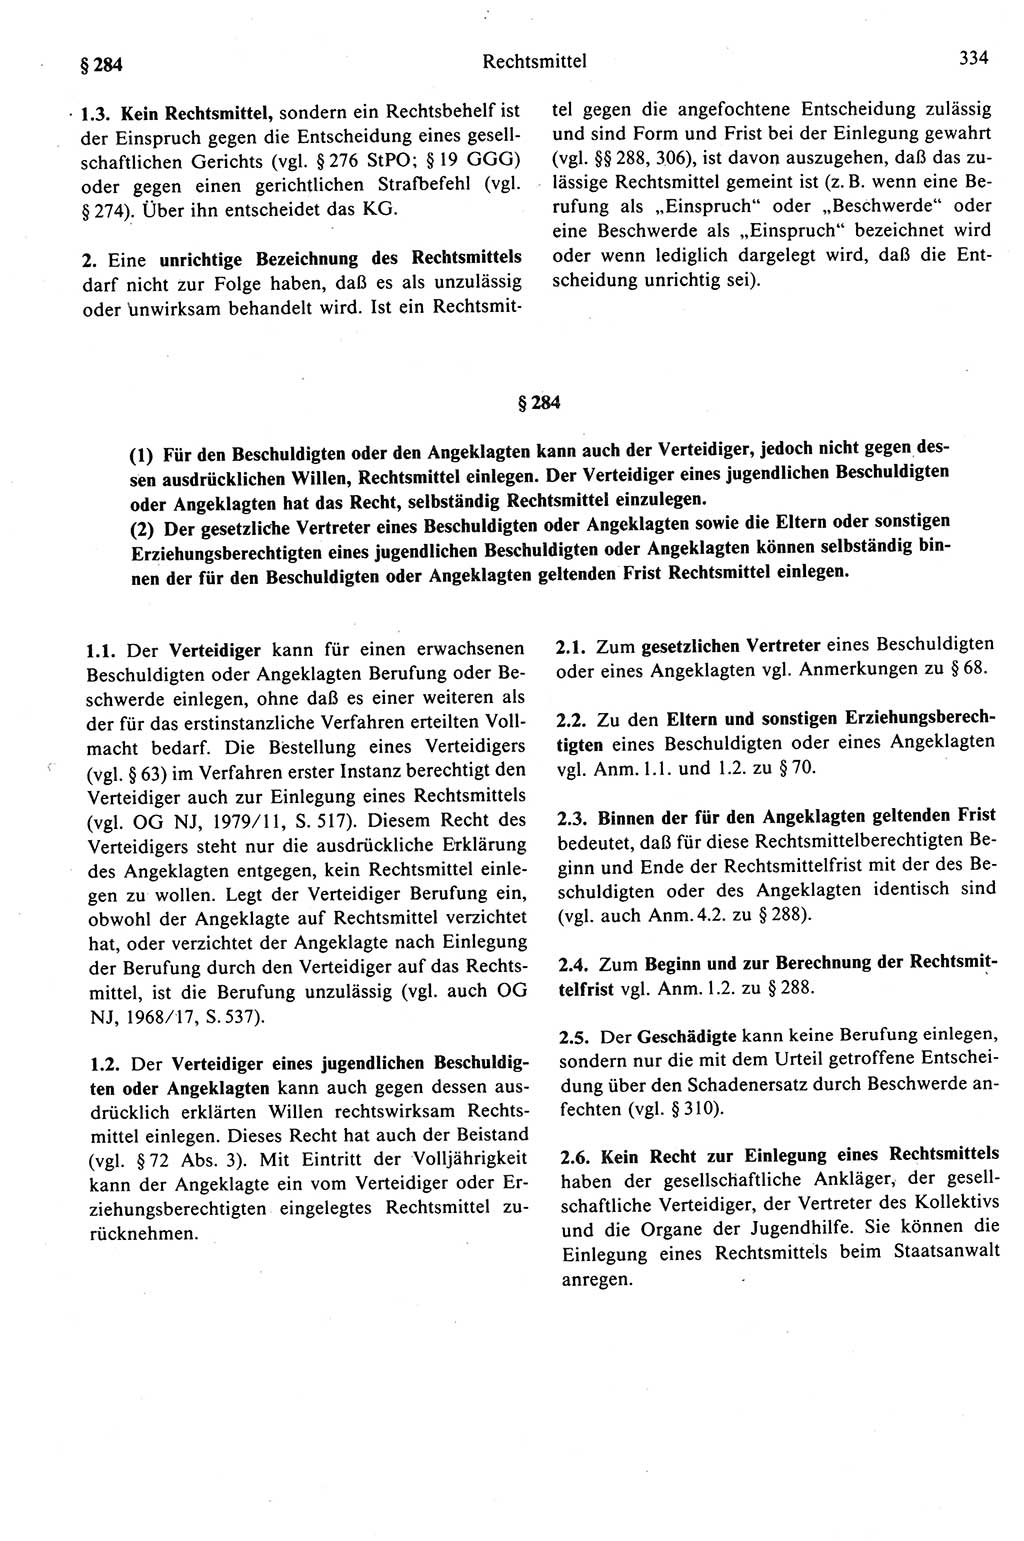 Strafprozeßrecht der DDR (Deutsche Demokratische Republik), Kommentar zur Strafprozeßordnung (StPO) 1989, Seite 334 (Strafprozeßr. DDR Komm. StPO 1989, S. 334)